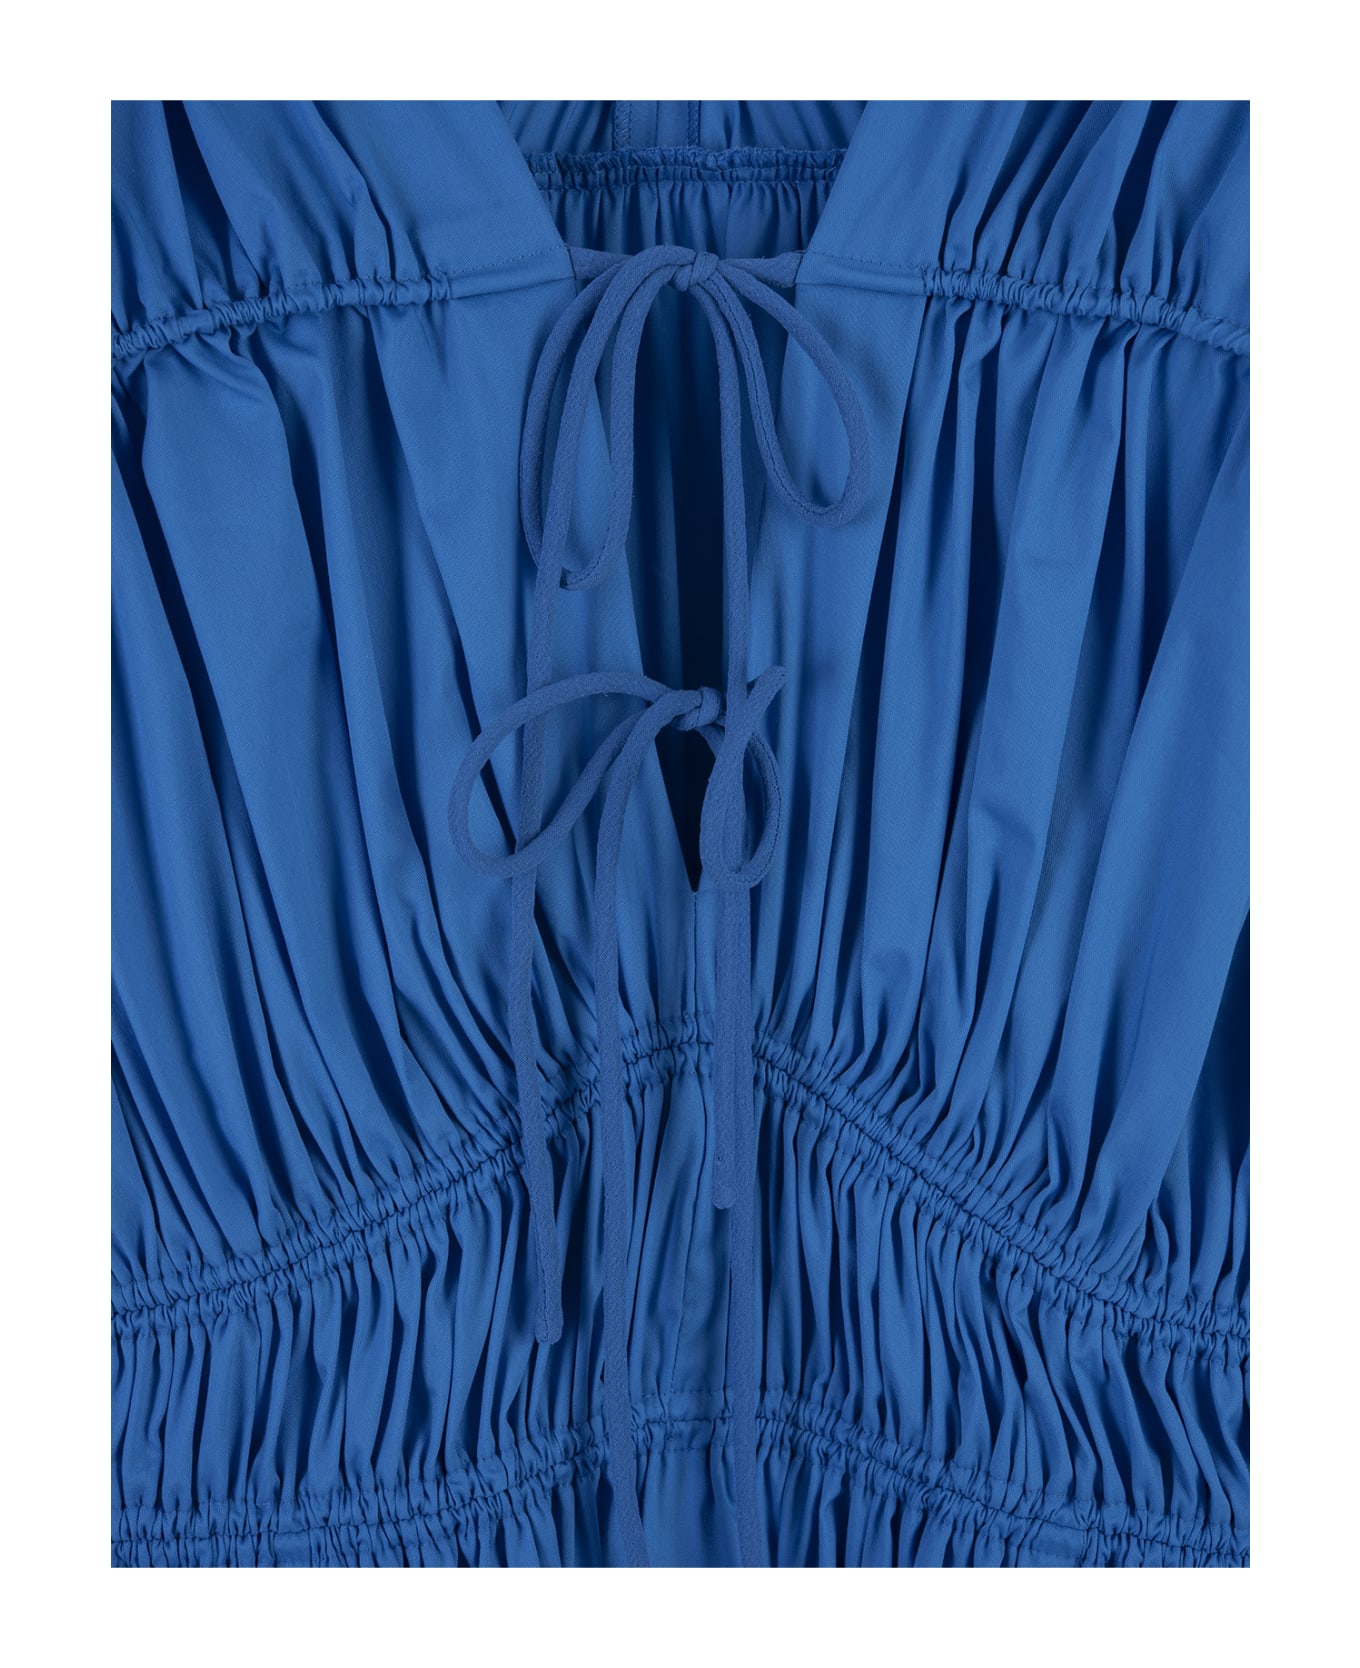 Diane Von Furstenberg Gillian Dress In Vivid Blue - Blue